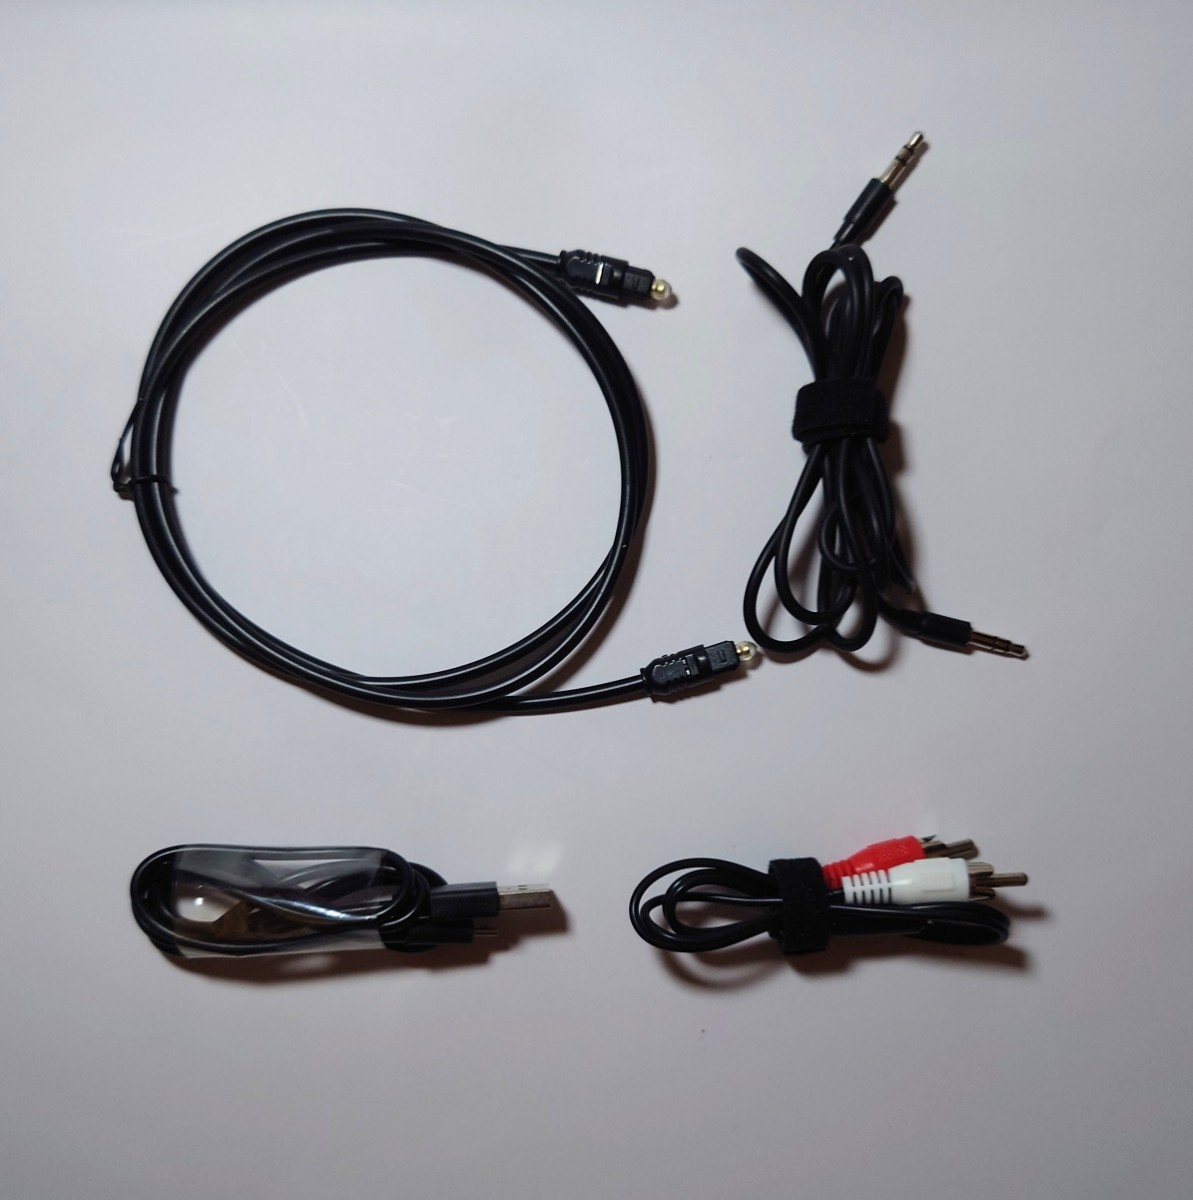 サンワダイレクト オーディオトランスミッター レシーバー Bluetooth 低遅延 USB電源 ワイヤレス未対応機器のワイヤレス接続 付属コード付_画像4